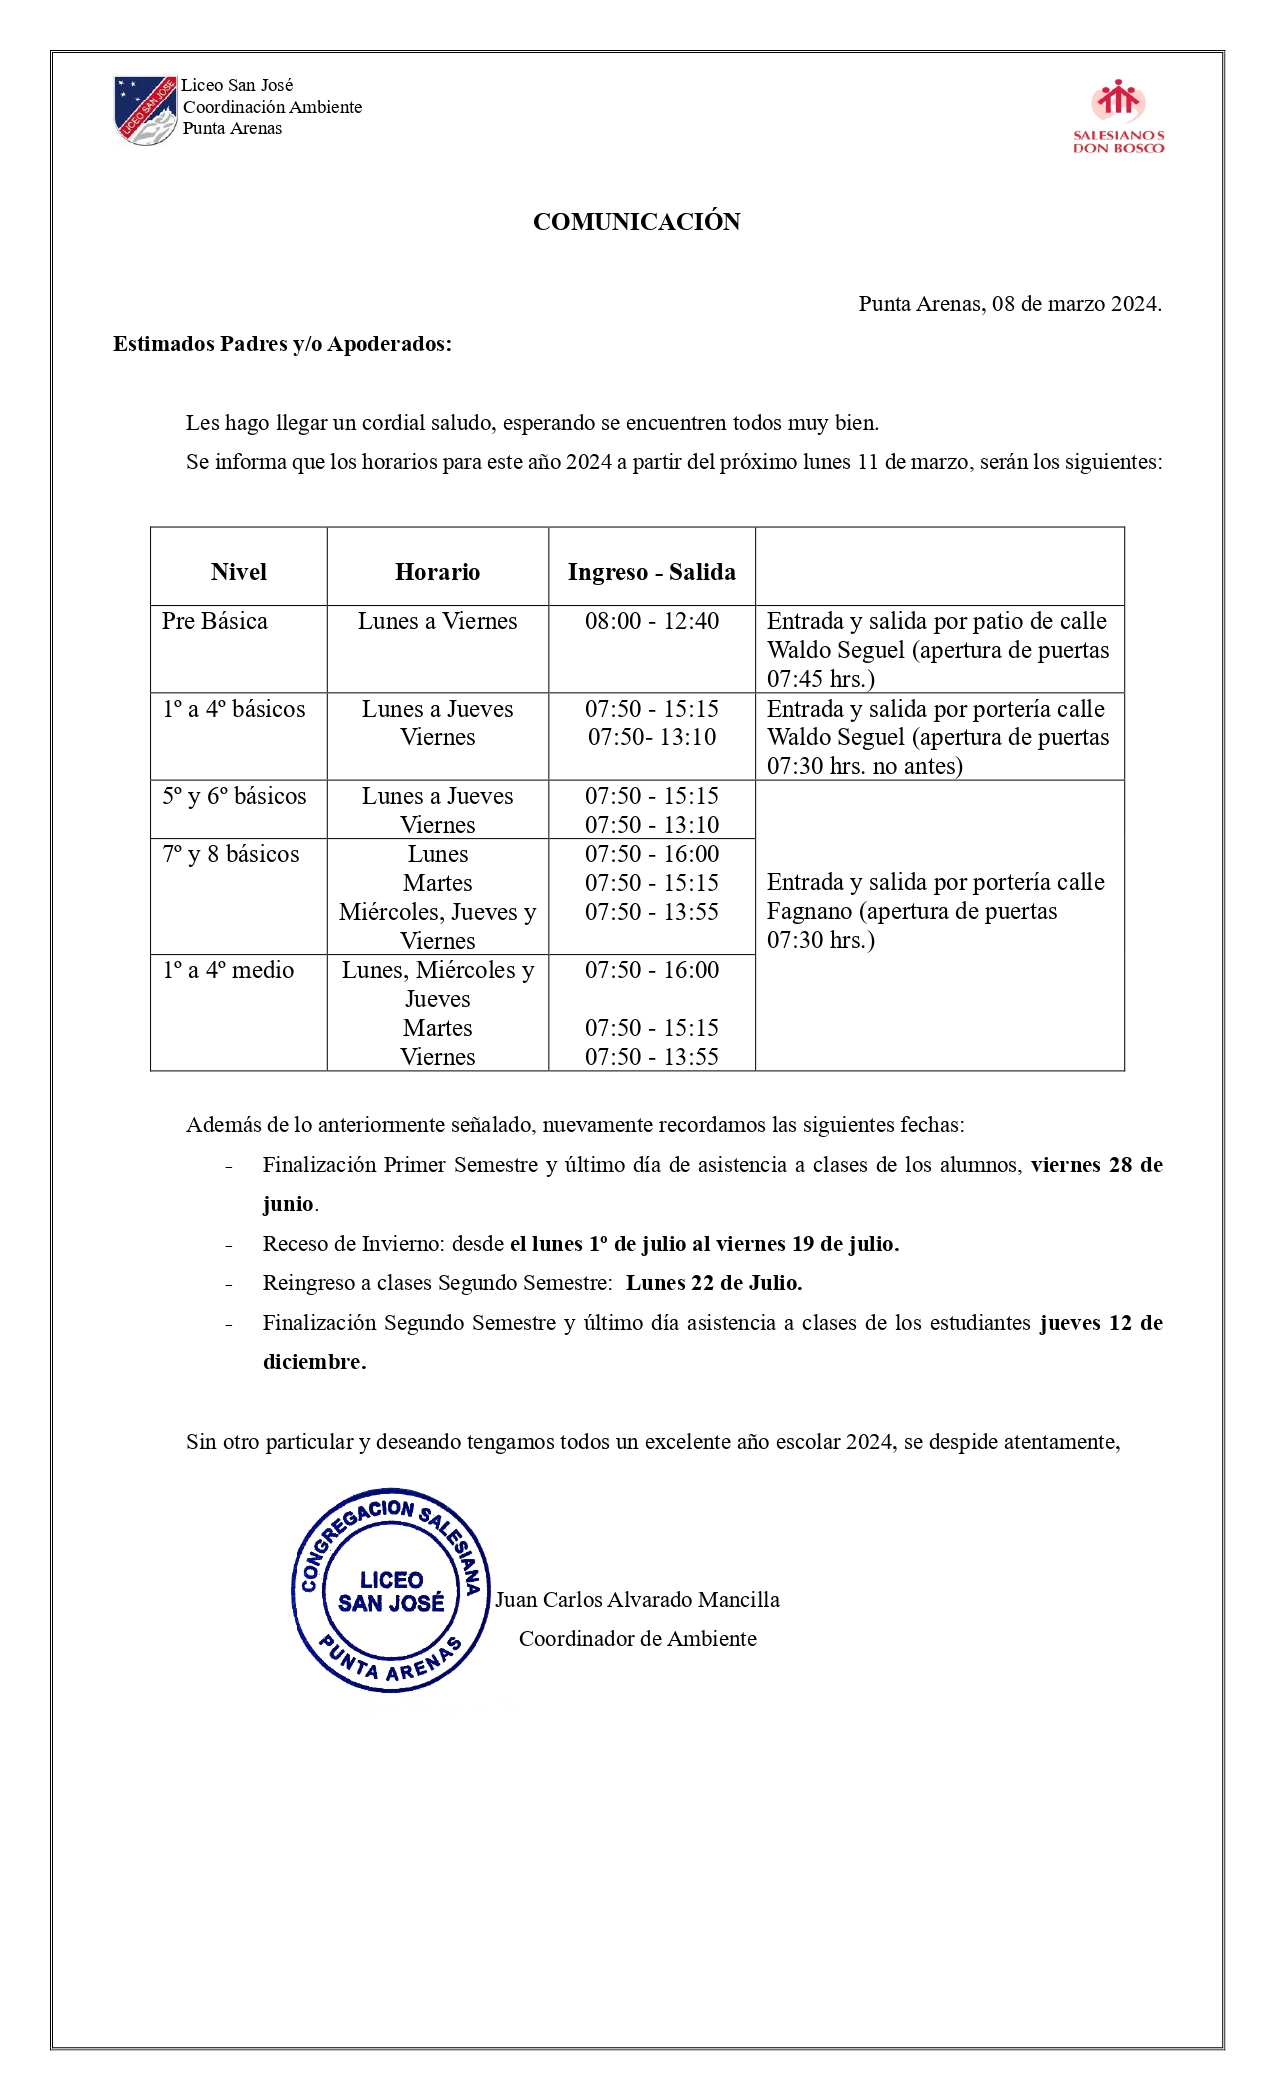 Comunicación PPAA - Horarios 2024 (modificación)_page-0001.jpg